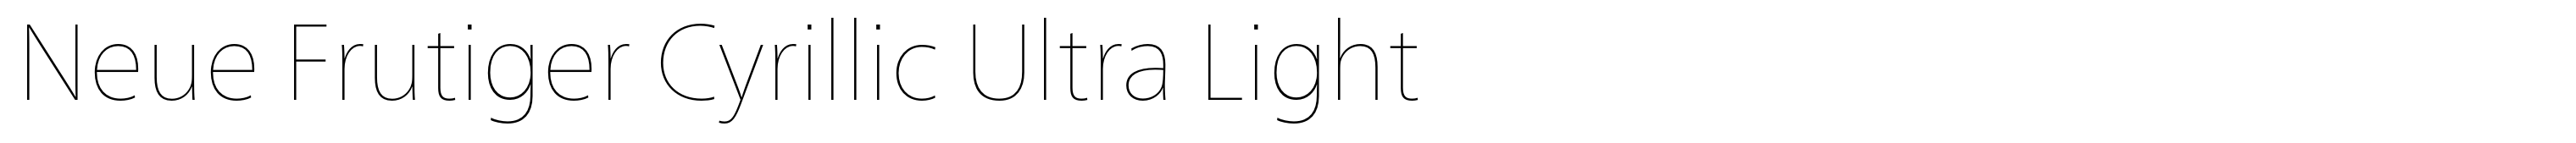 Neue Frutiger Cyrillic Ultra Light